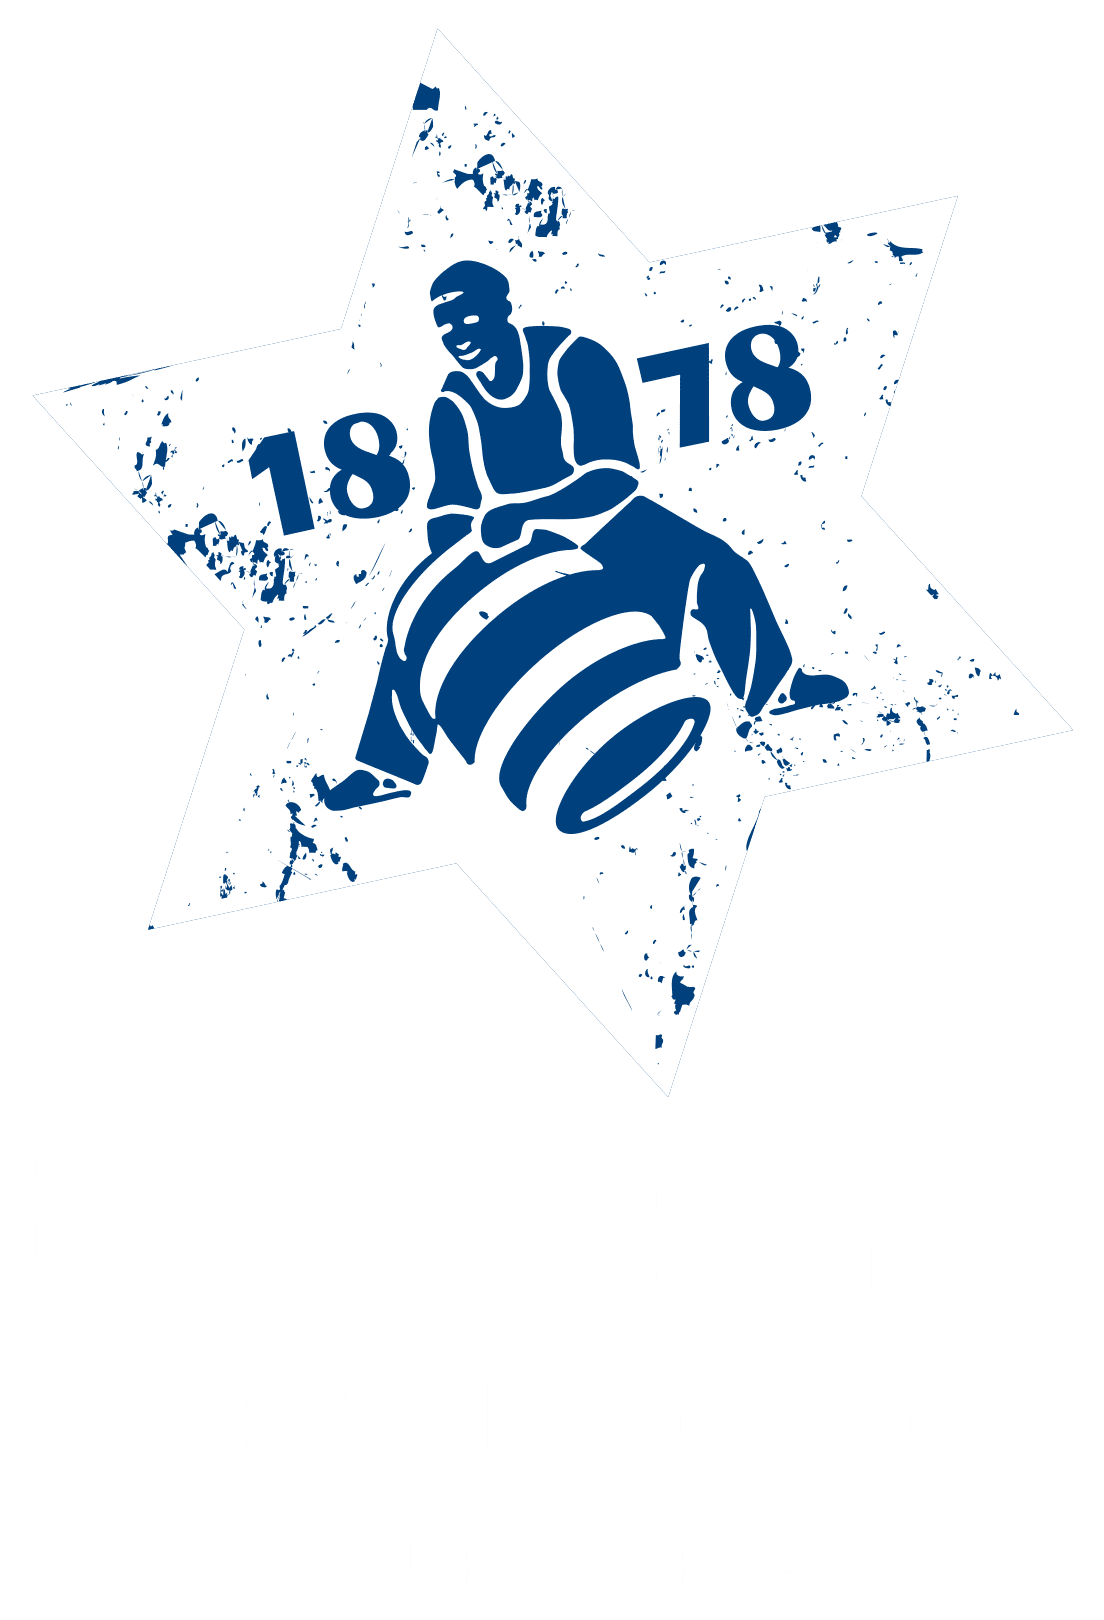 The Karlsberg logo.